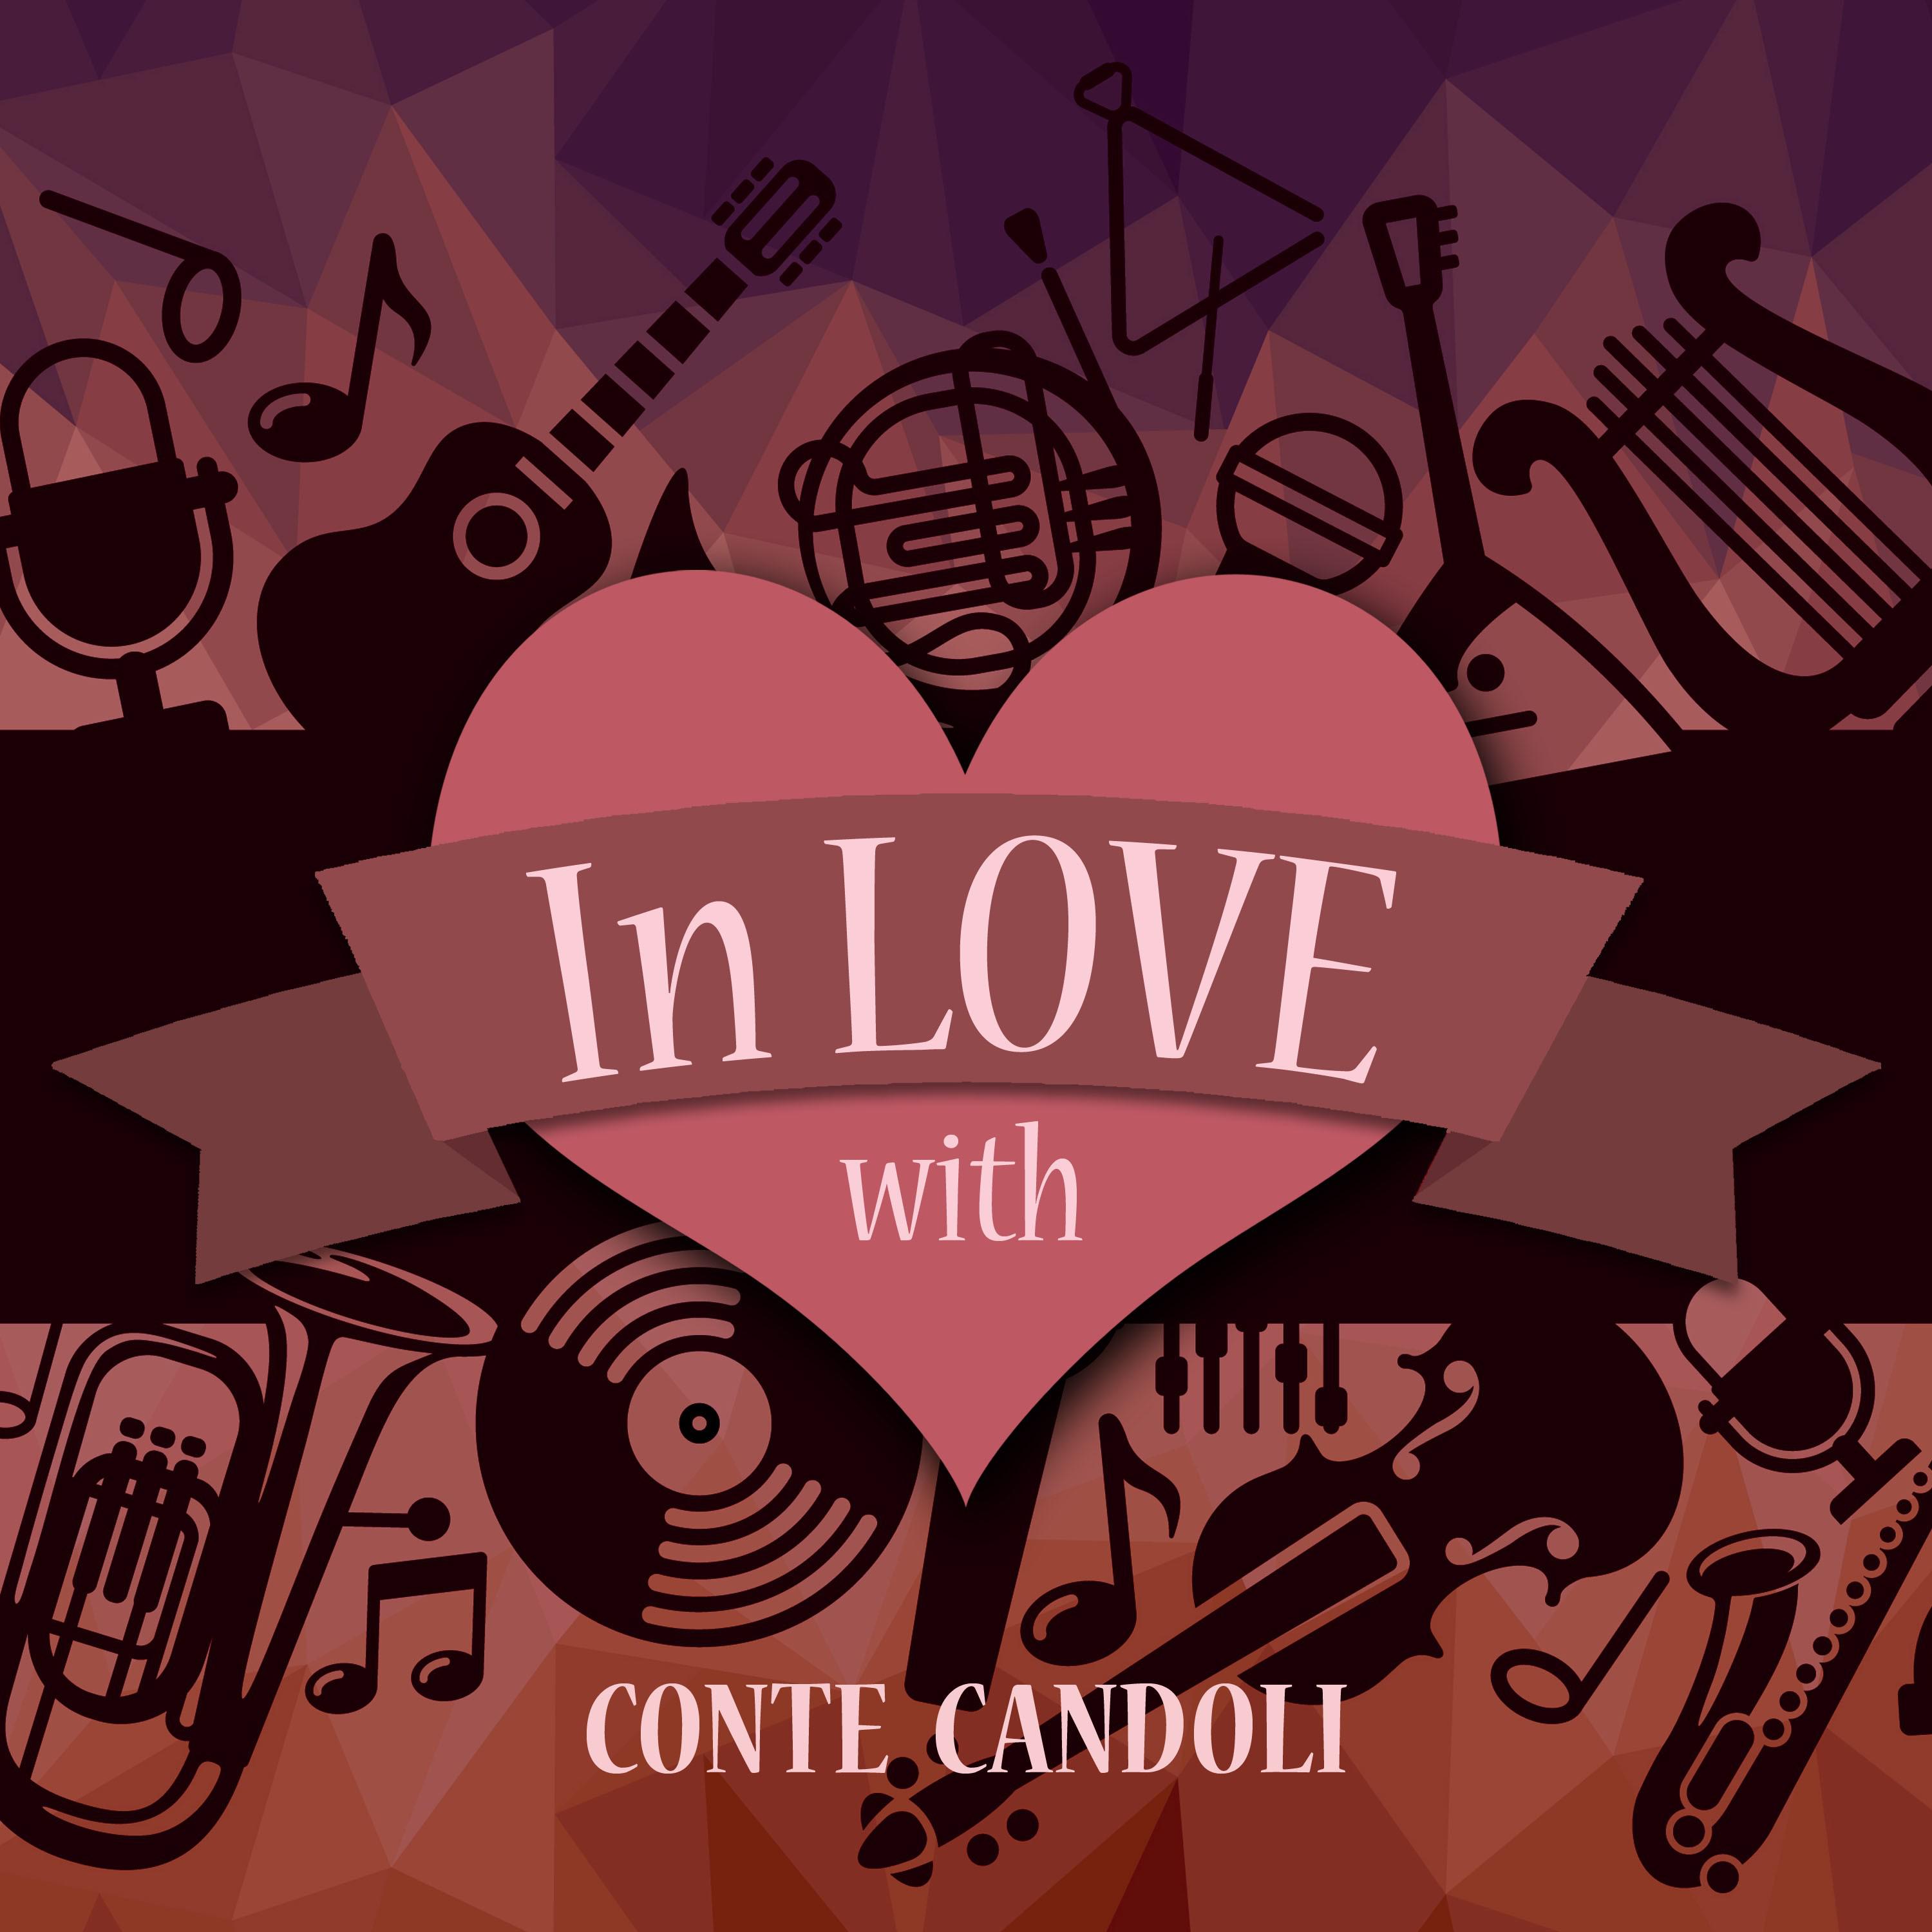 In Love with Conte Candoli